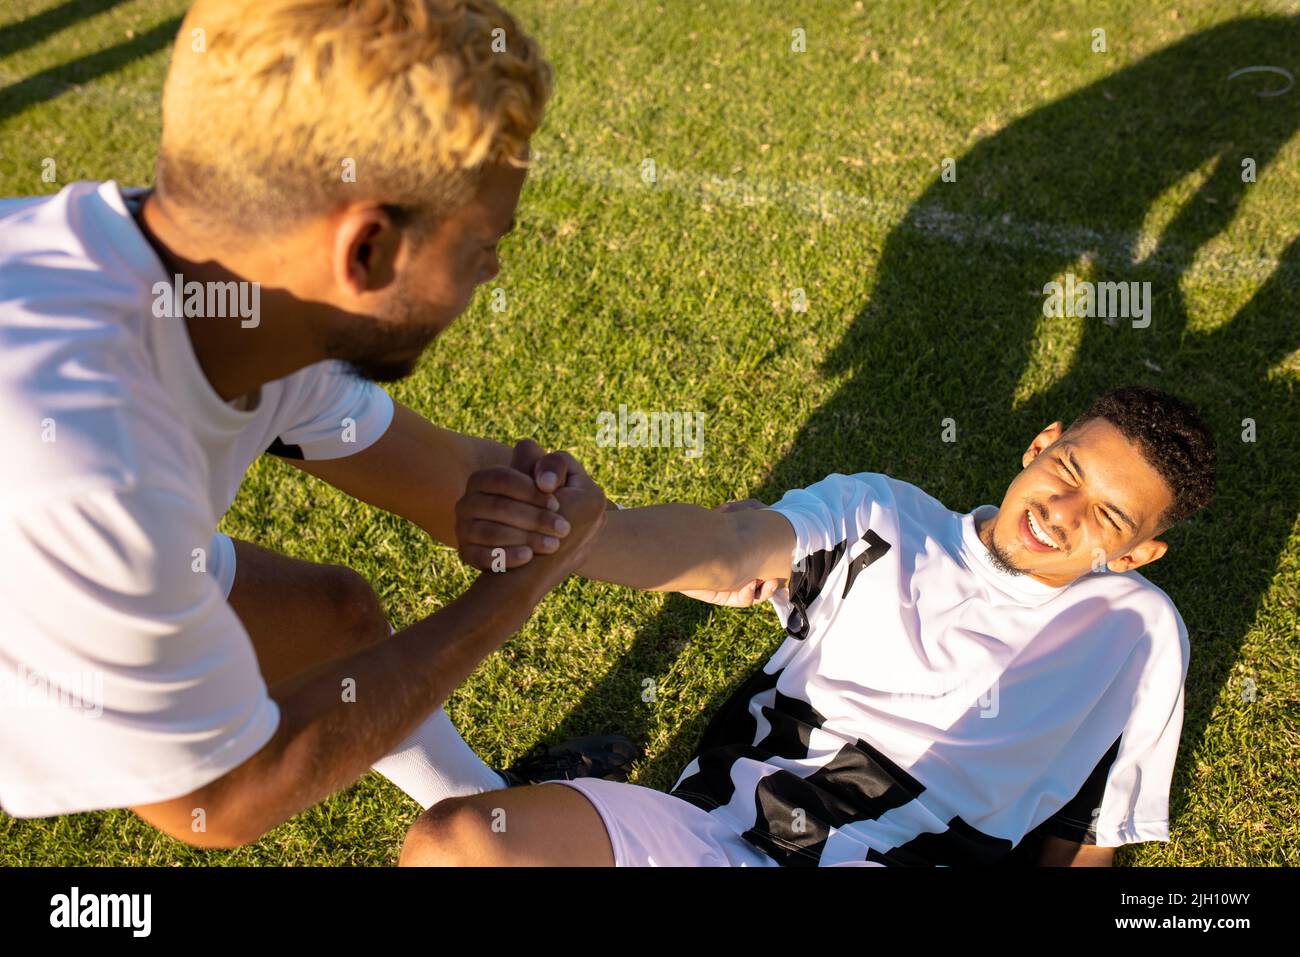 Vue en grand angle d'un joueur caucasien qui aide un coéquipier blessé allongé sur le terrain à se lever Banque D'Images